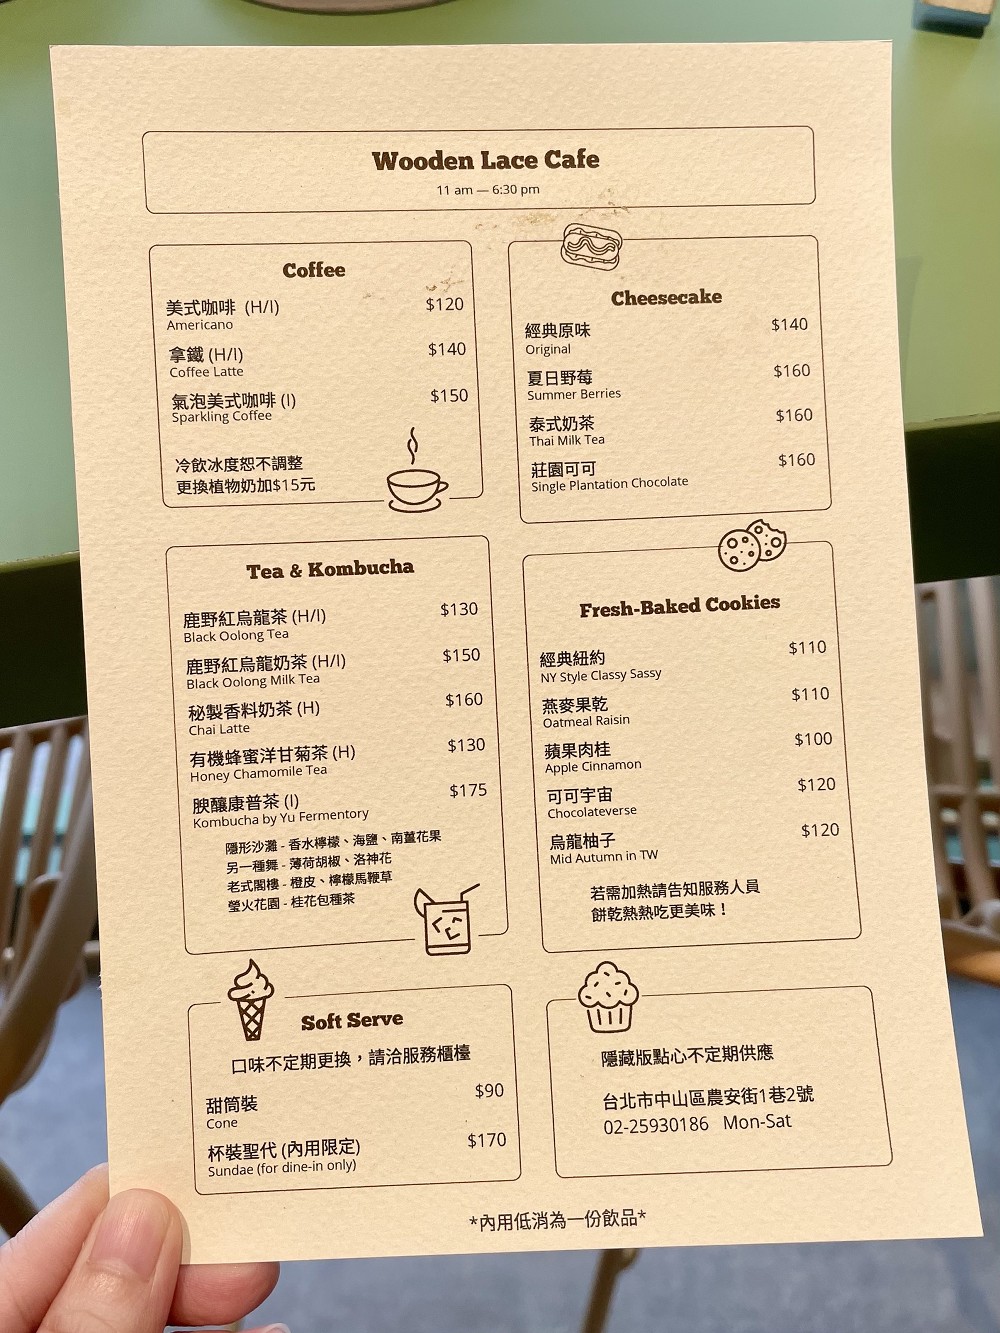 咖啡菜單 coffe menu 木蕾絲咖啡甜點店 Wooden lace cafe